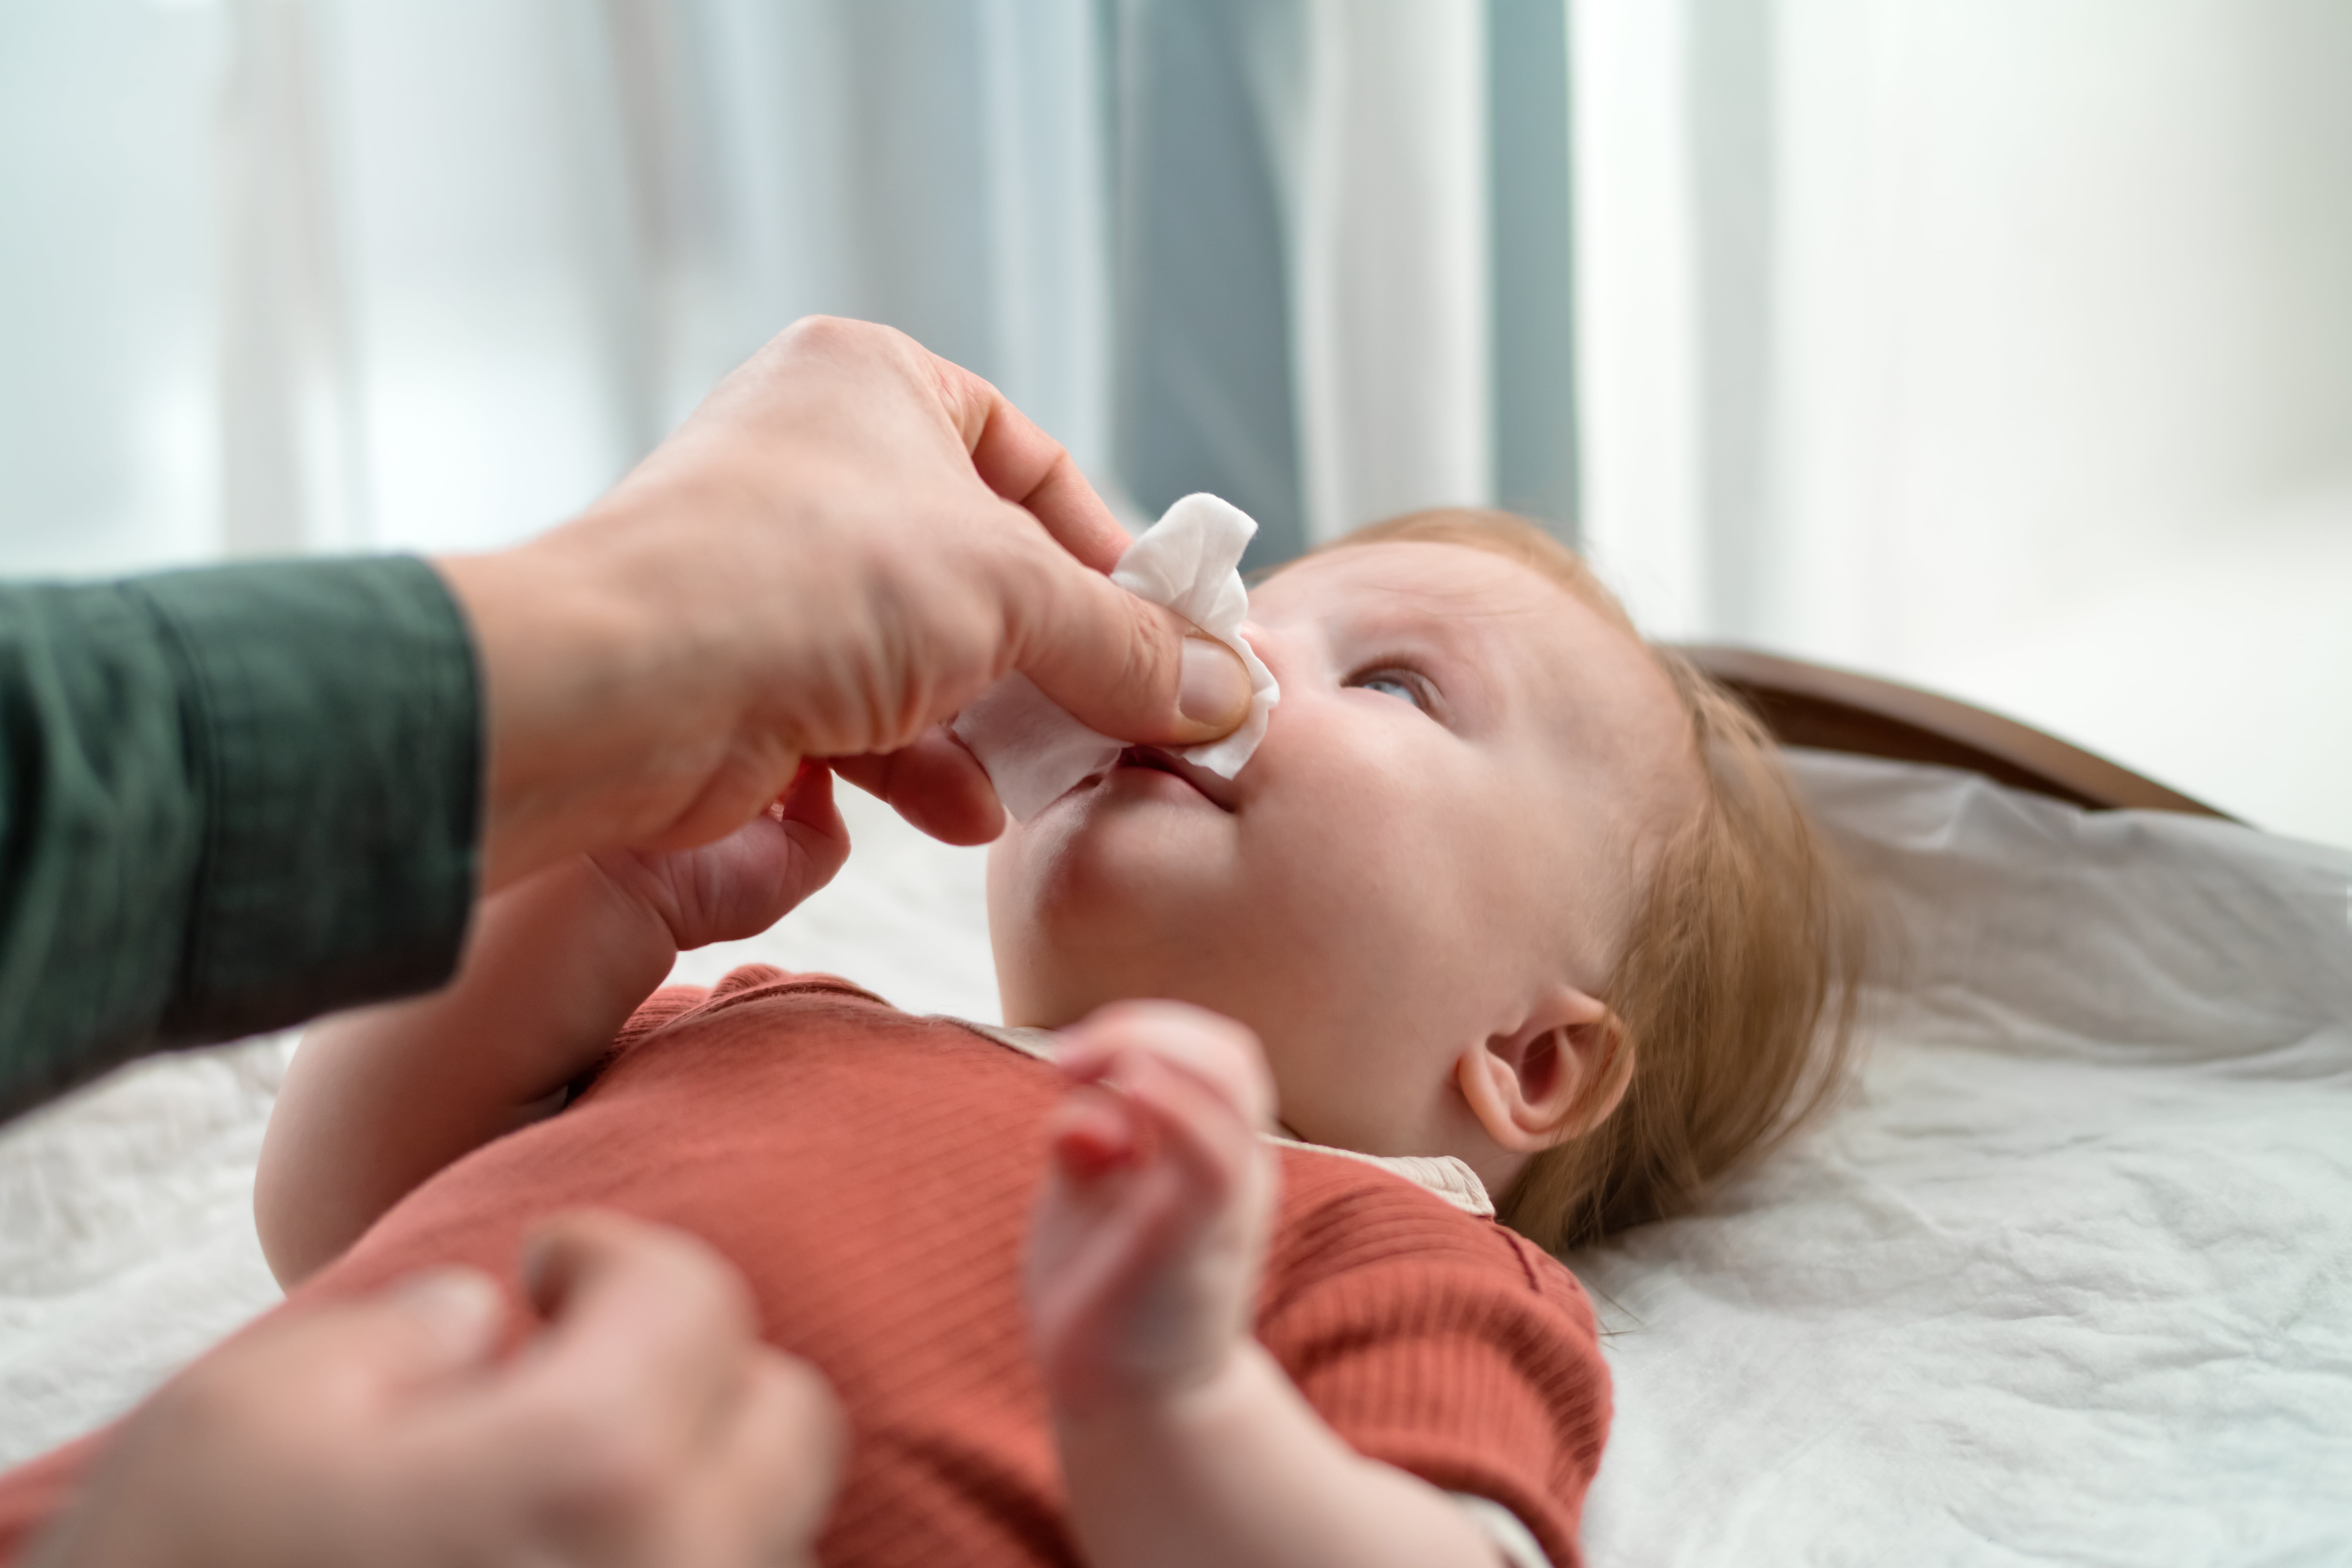 嬰兒由於尚不會學習用嘴巴呼吸，每當嬰兒鼻塞睡不好時，可能會導致鼻塞狀況愈加嚴重。